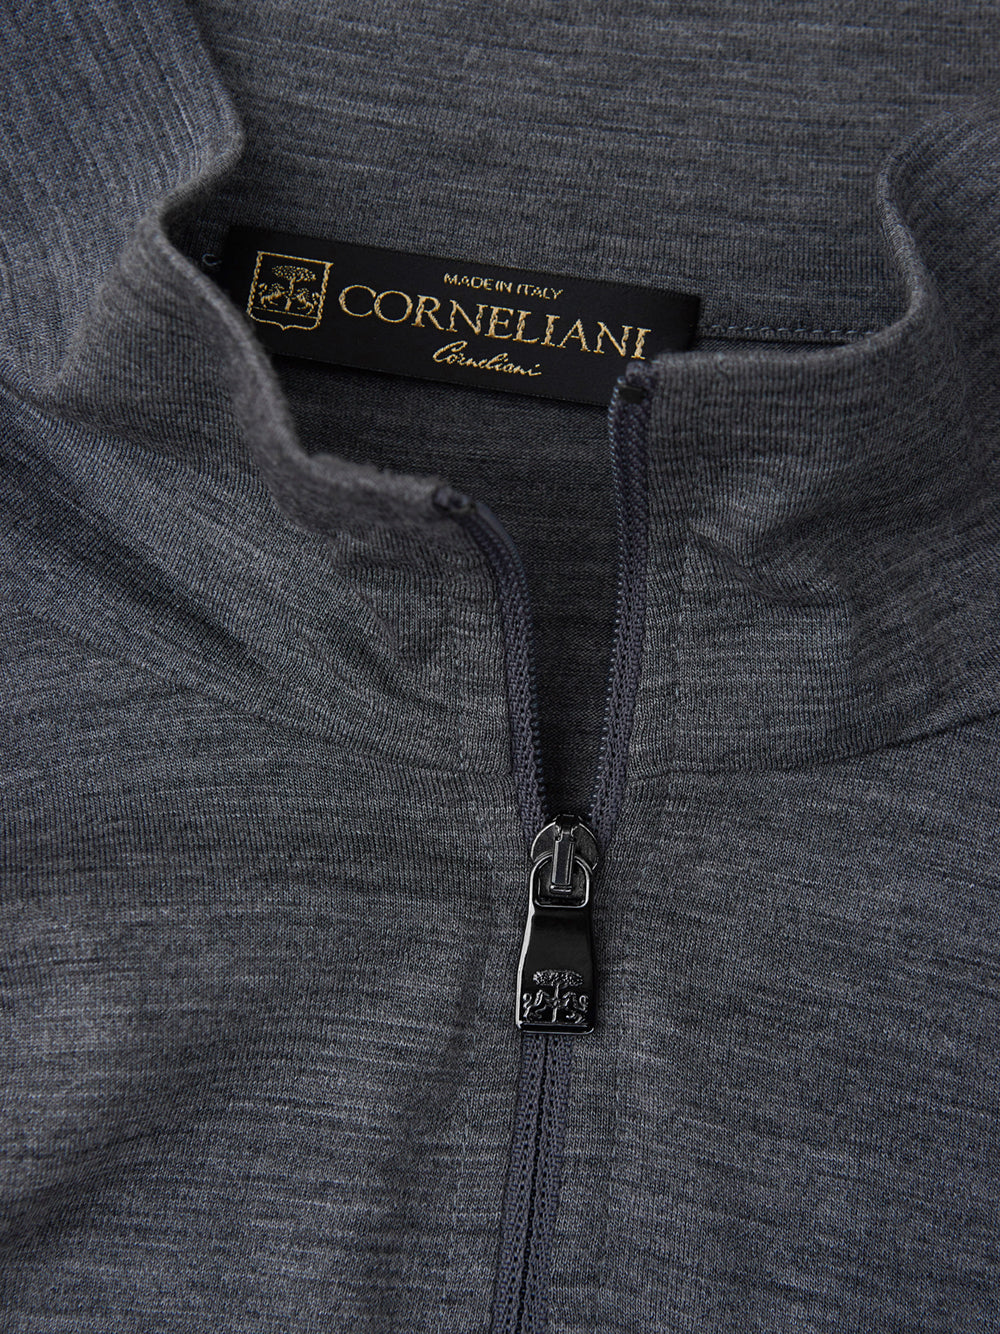 Jersey de cuello alto de lana Corneliani con media cremallera